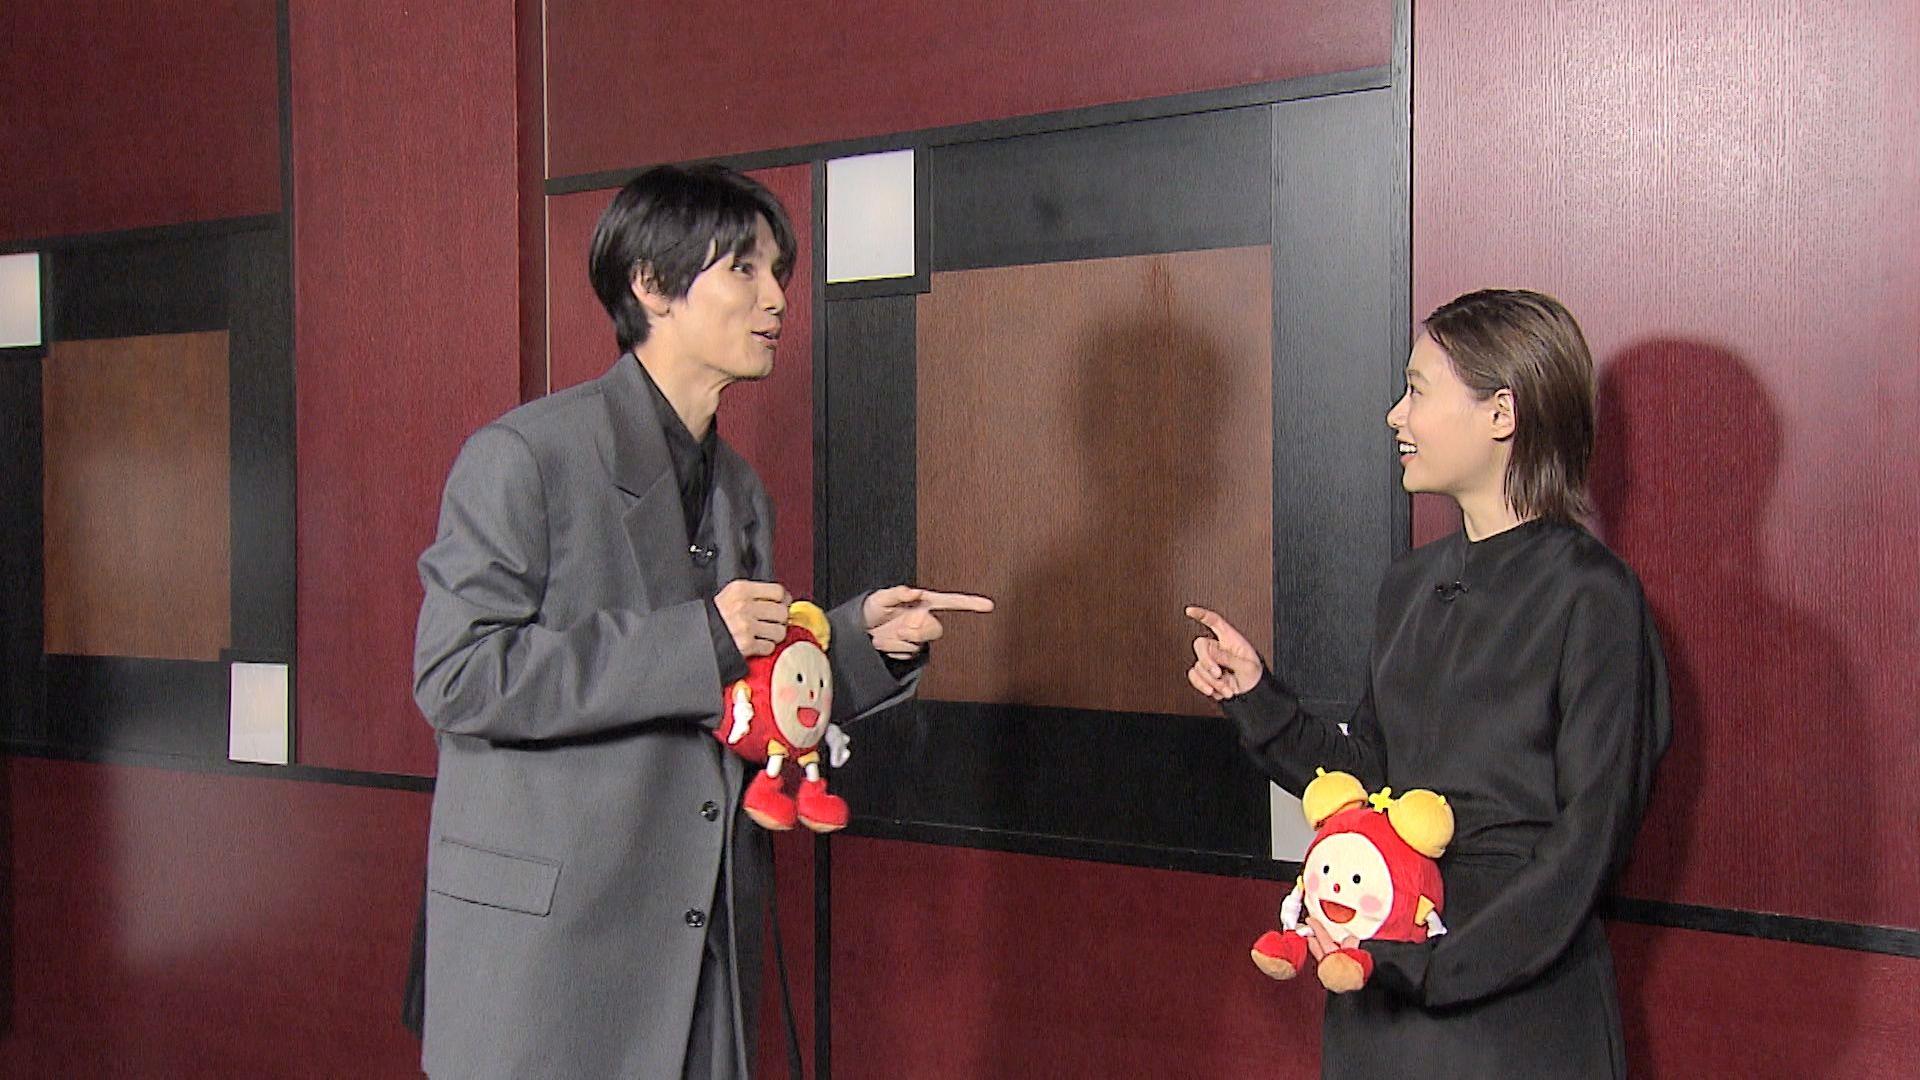 杉咲花 萩原利久とインタビュー中に目が合い爆笑！2度目の共演に「こんなに人懐っこい方なんだ」